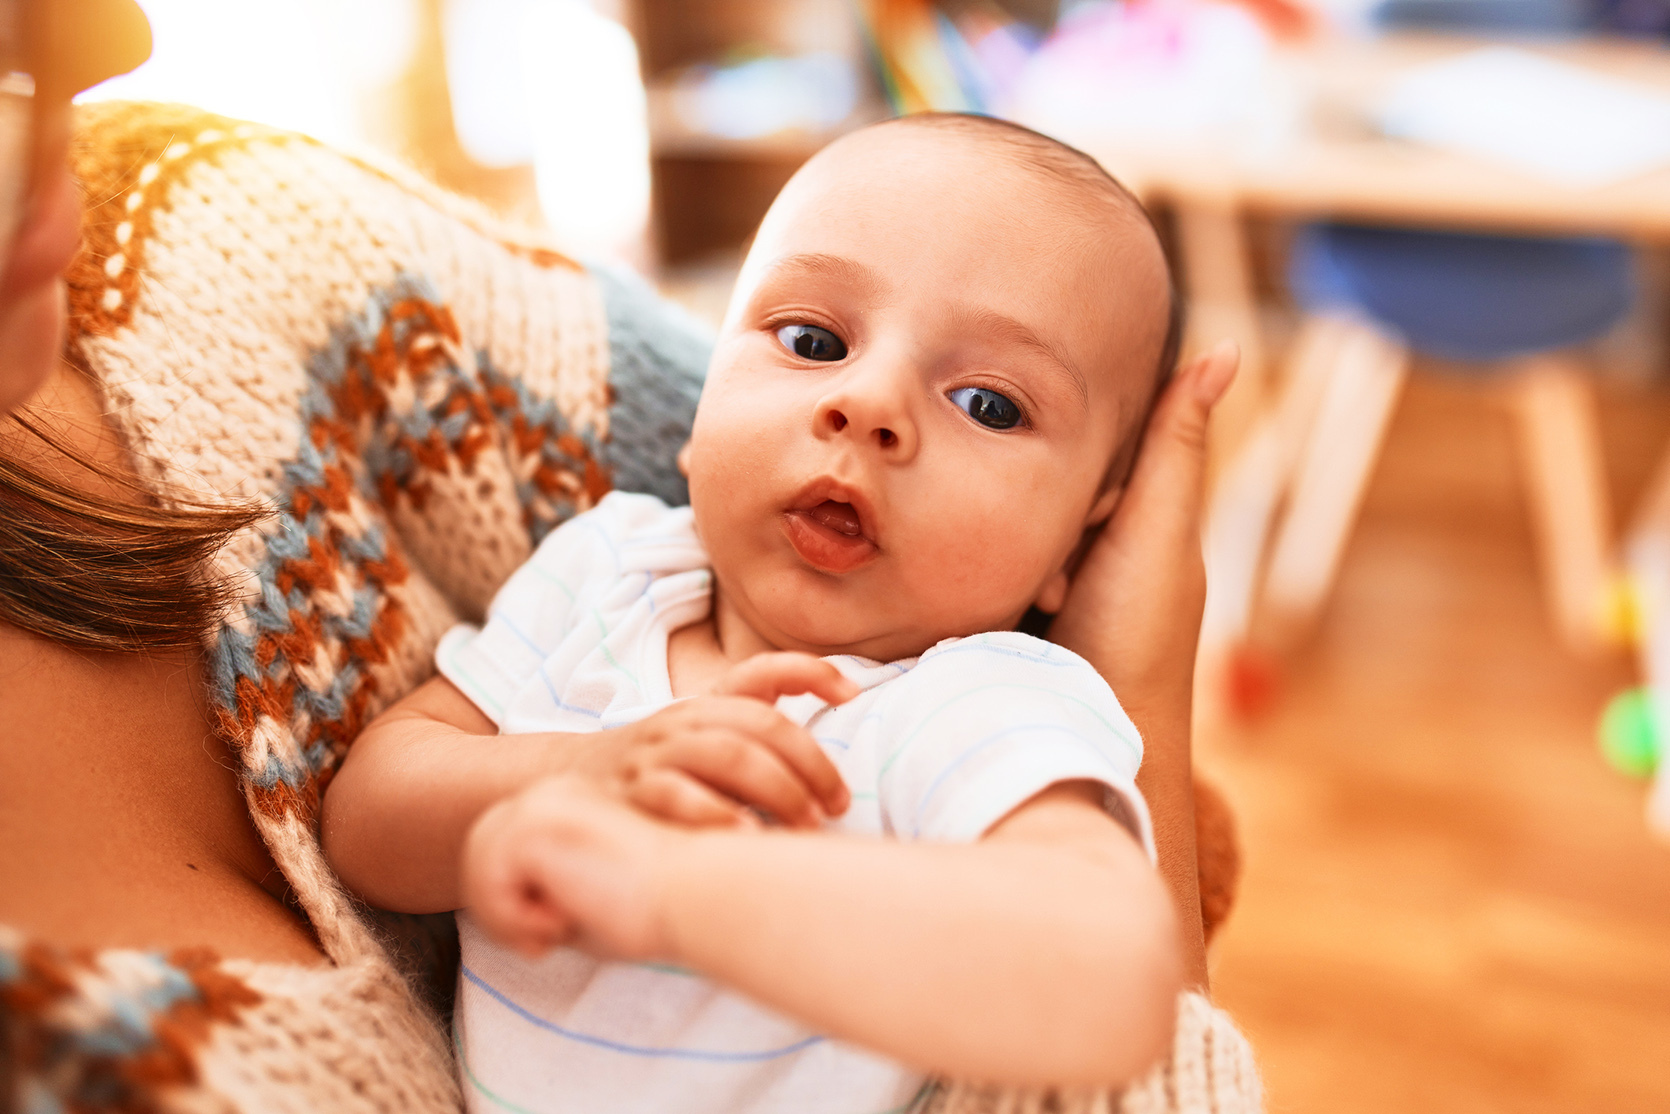 Nerwowy noworodek podczas karmienia / istock